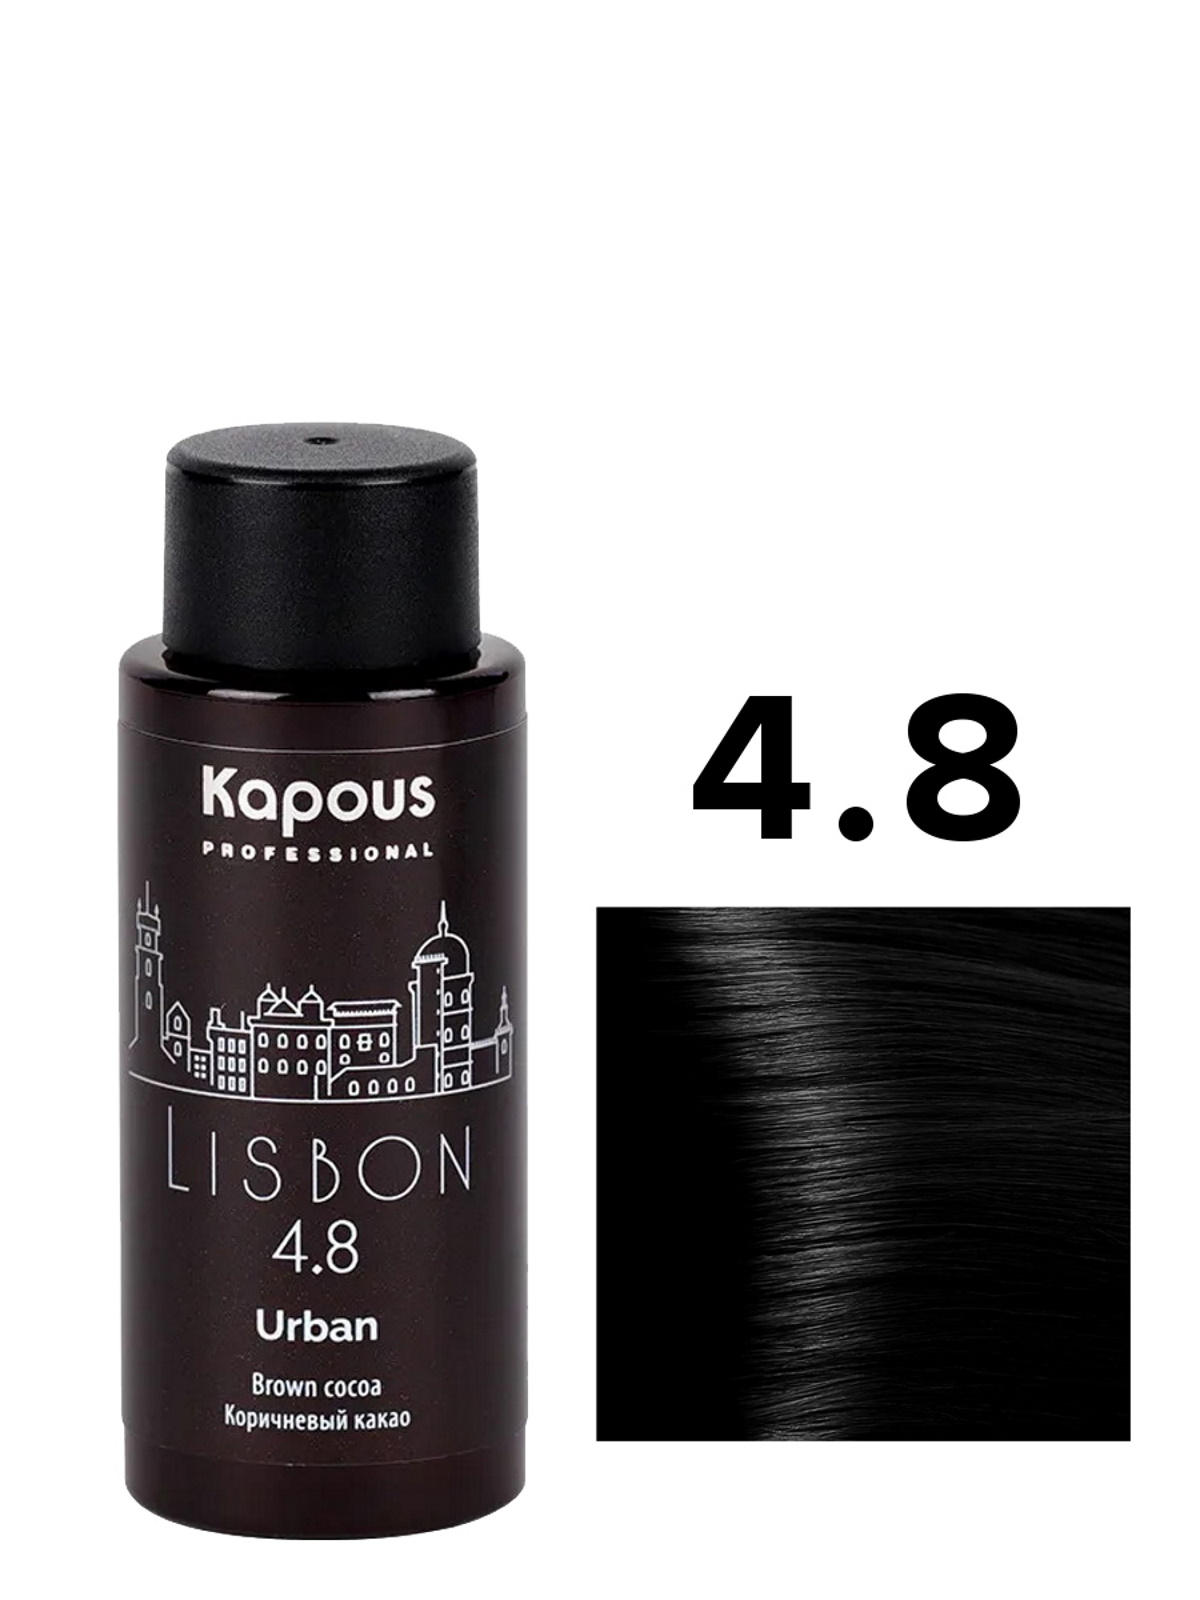 Жидкий краситель URBAN KAPOUS PROFESSIONAL 4.8 коричневый какао 60 мл краситель sensation de luxe sen7 7 7 7 русый коричневый 60 мл